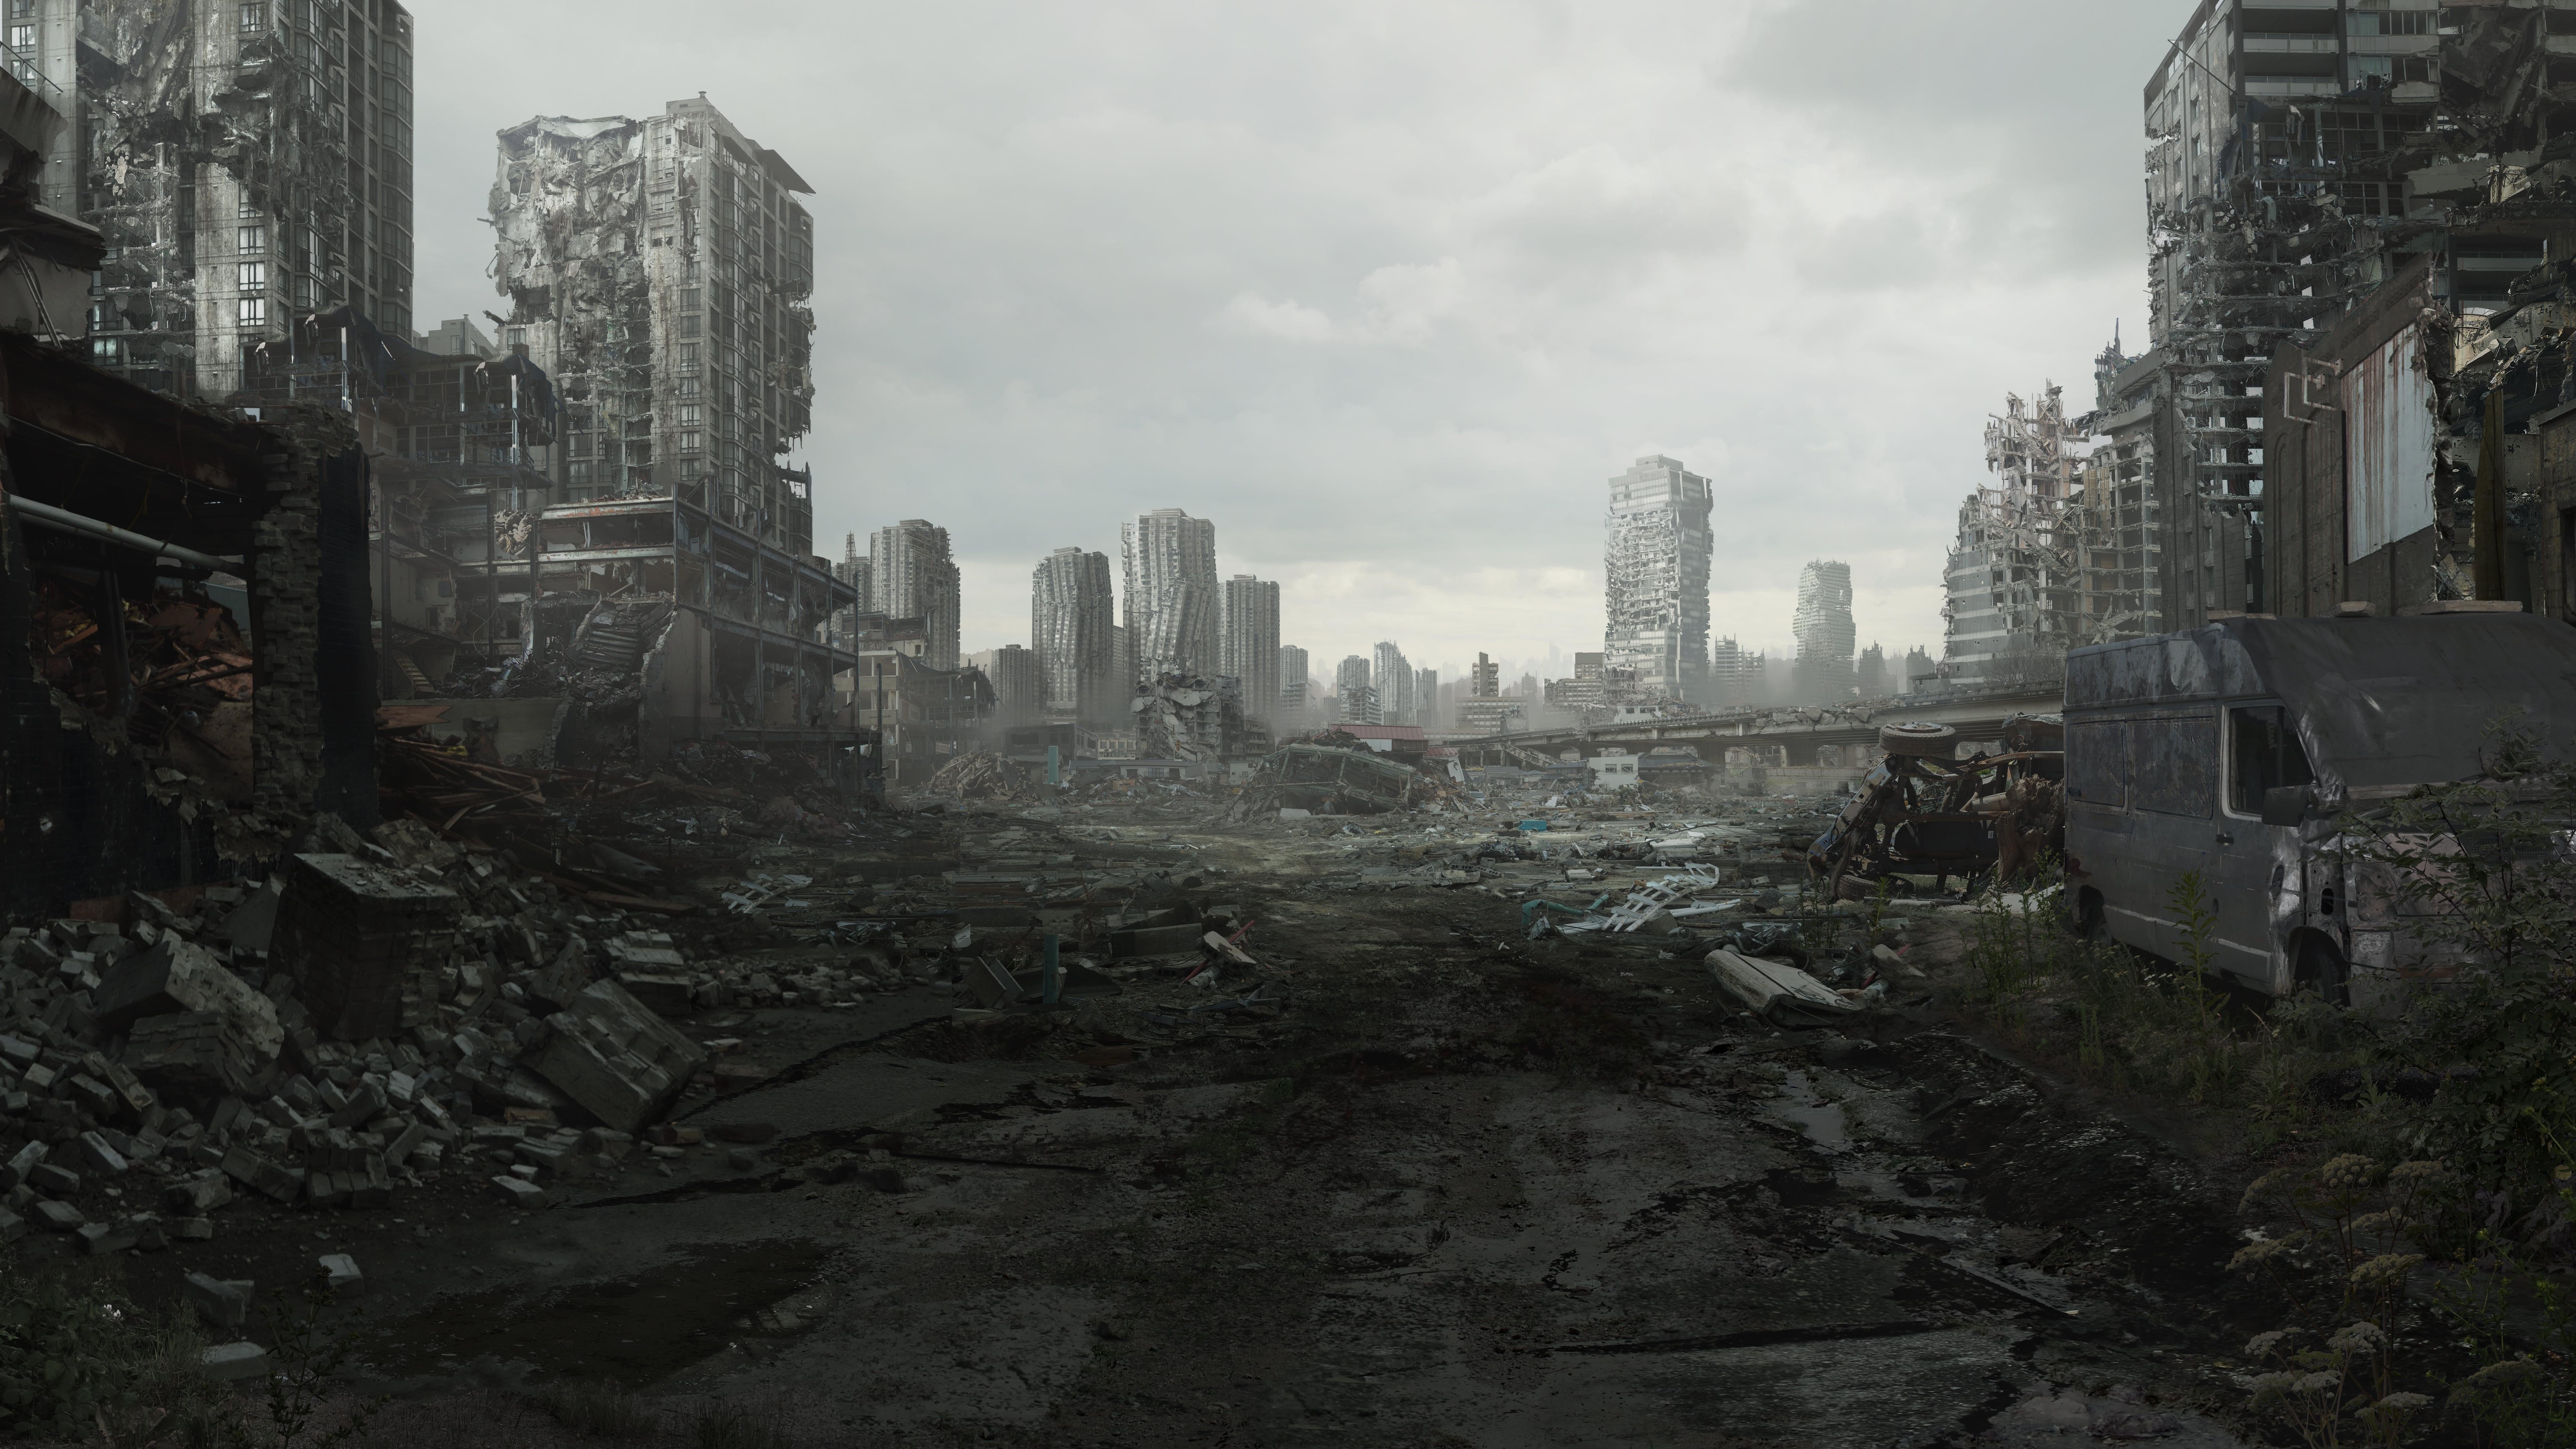 Что был сильно разрушен. Руины города. Развалины города. Город после апокалипсиса.